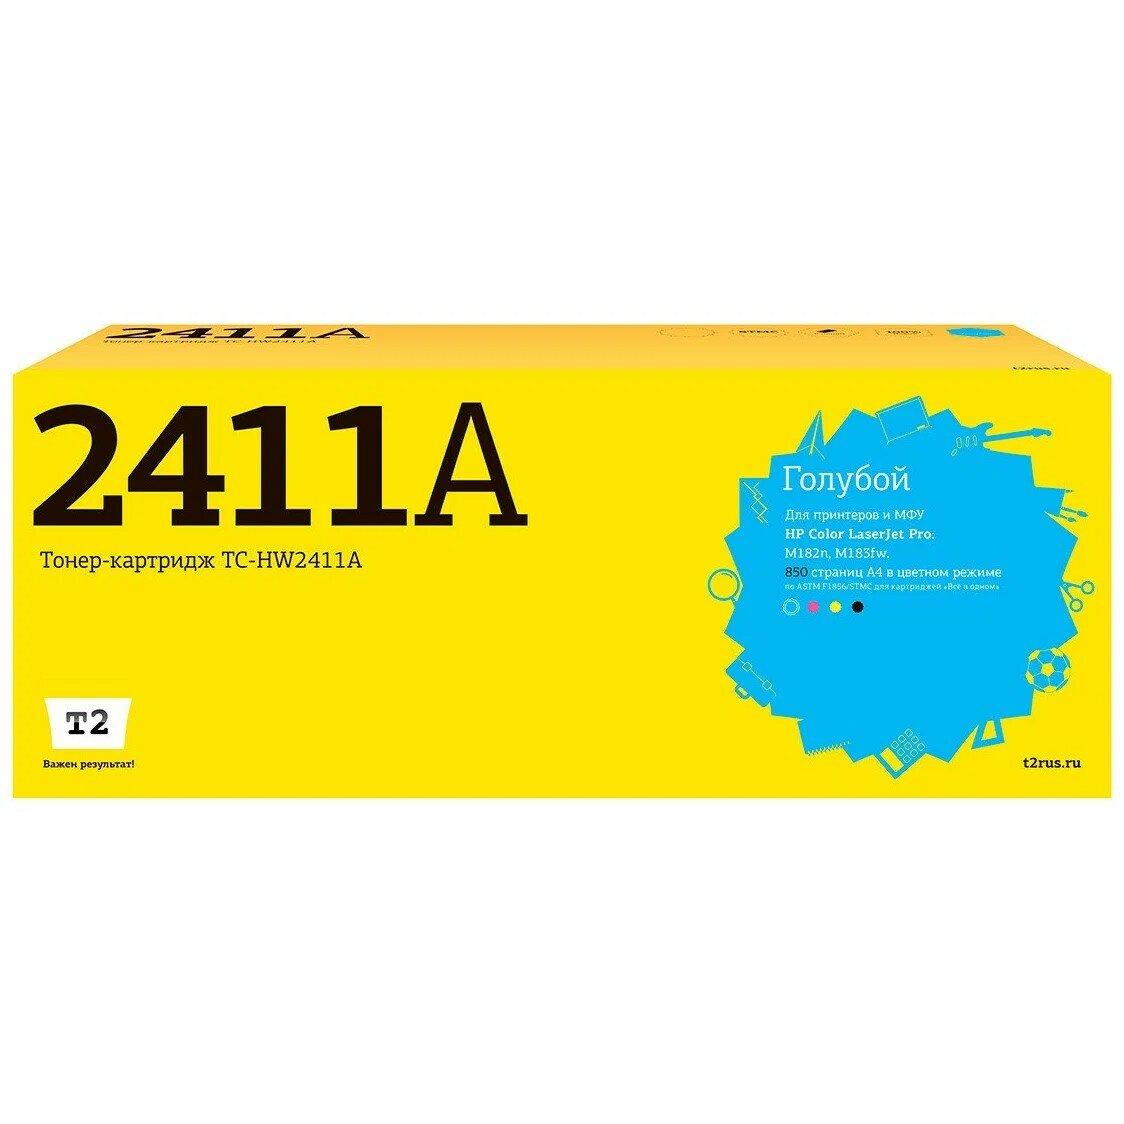 T2 W2411A картридж TC-HW2411A для HP Color LaserJet Pro M182n M183fw 850 стр. Голубой, с чипом